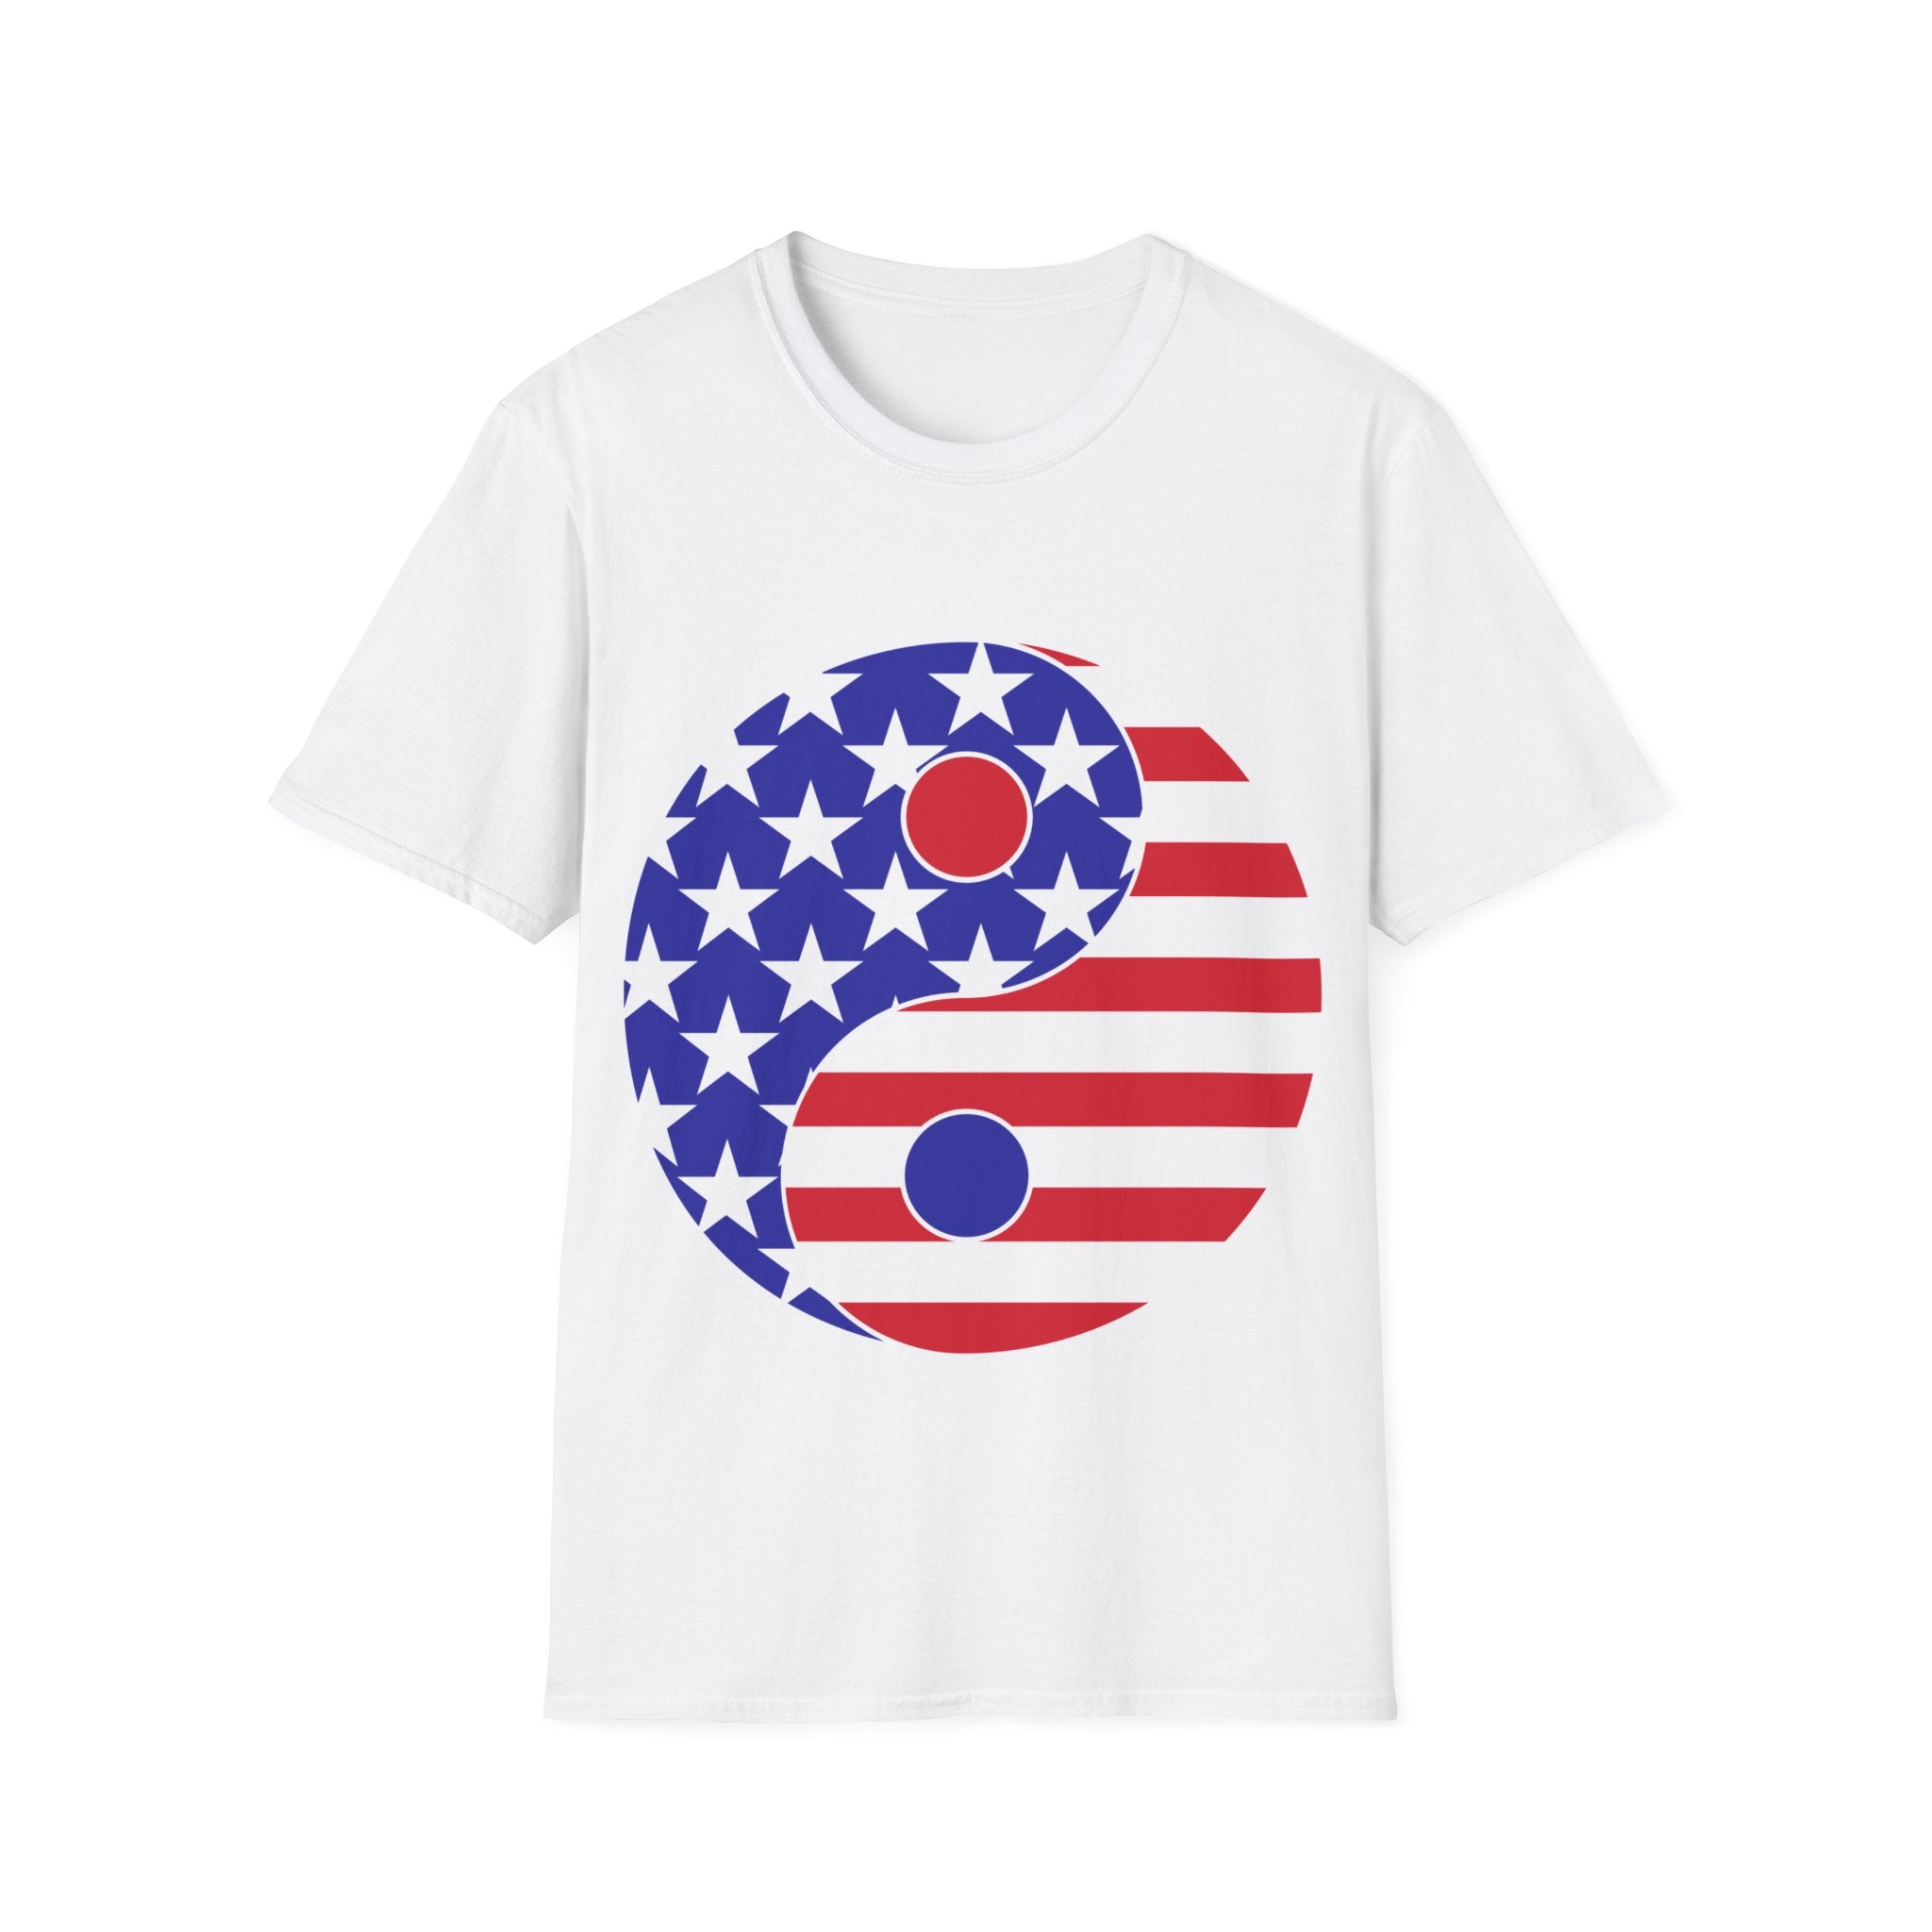 Unisex Softstyle T-Shirt - plusminusco.com